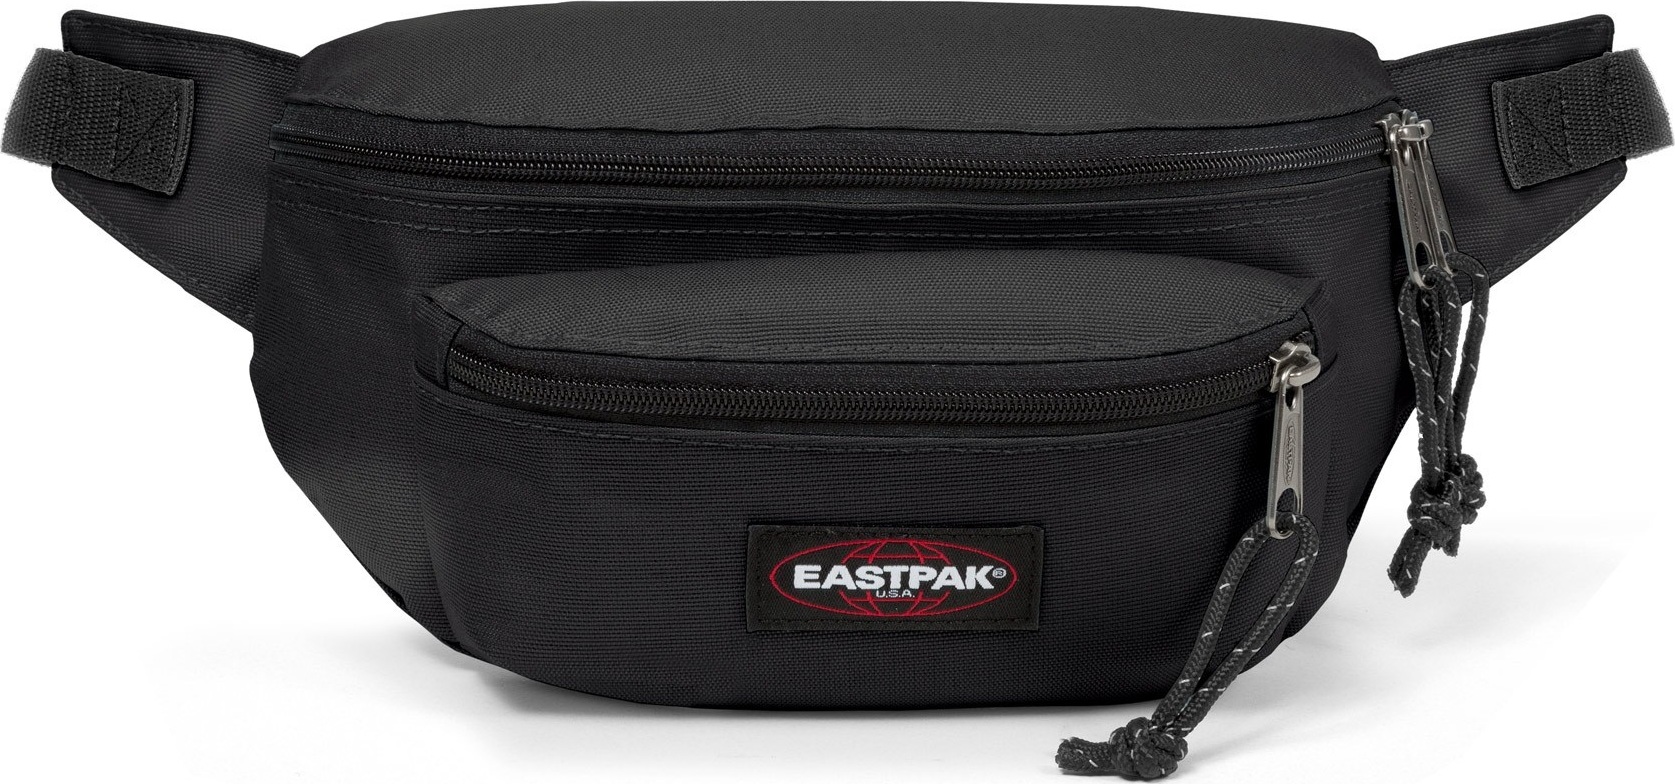 Eastpak Doggy Bag Black